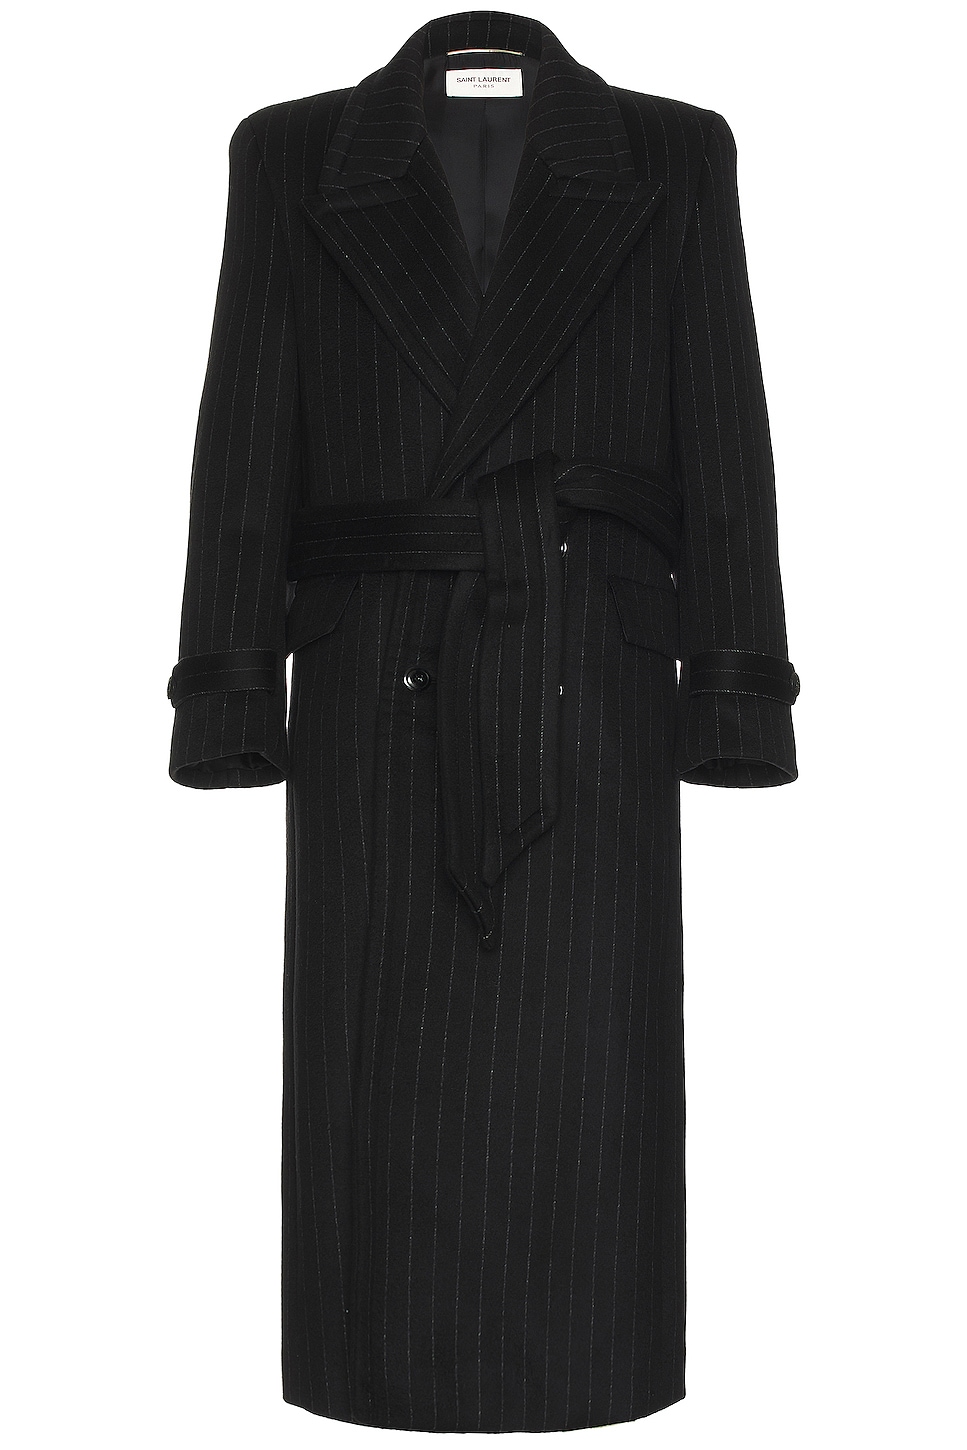 Image 1 of Saint Laurent Manteau Crante Coat in Noir